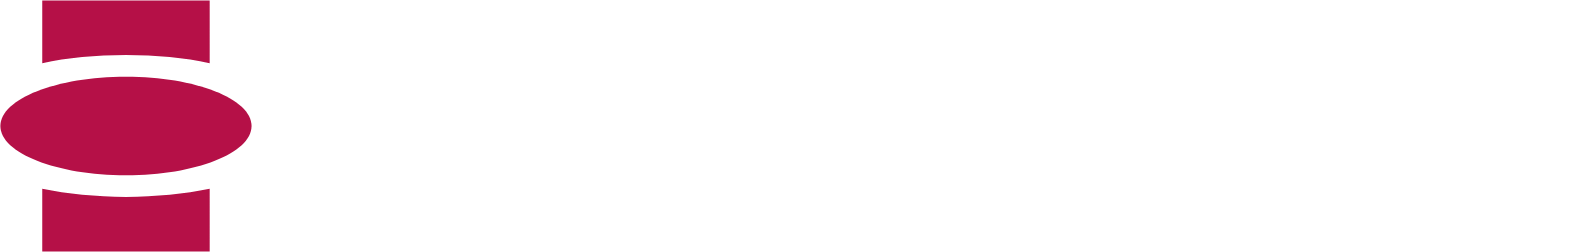 Eckert & Ziegler Logo groß für dunkle Hintergründe (transparentes PNG)